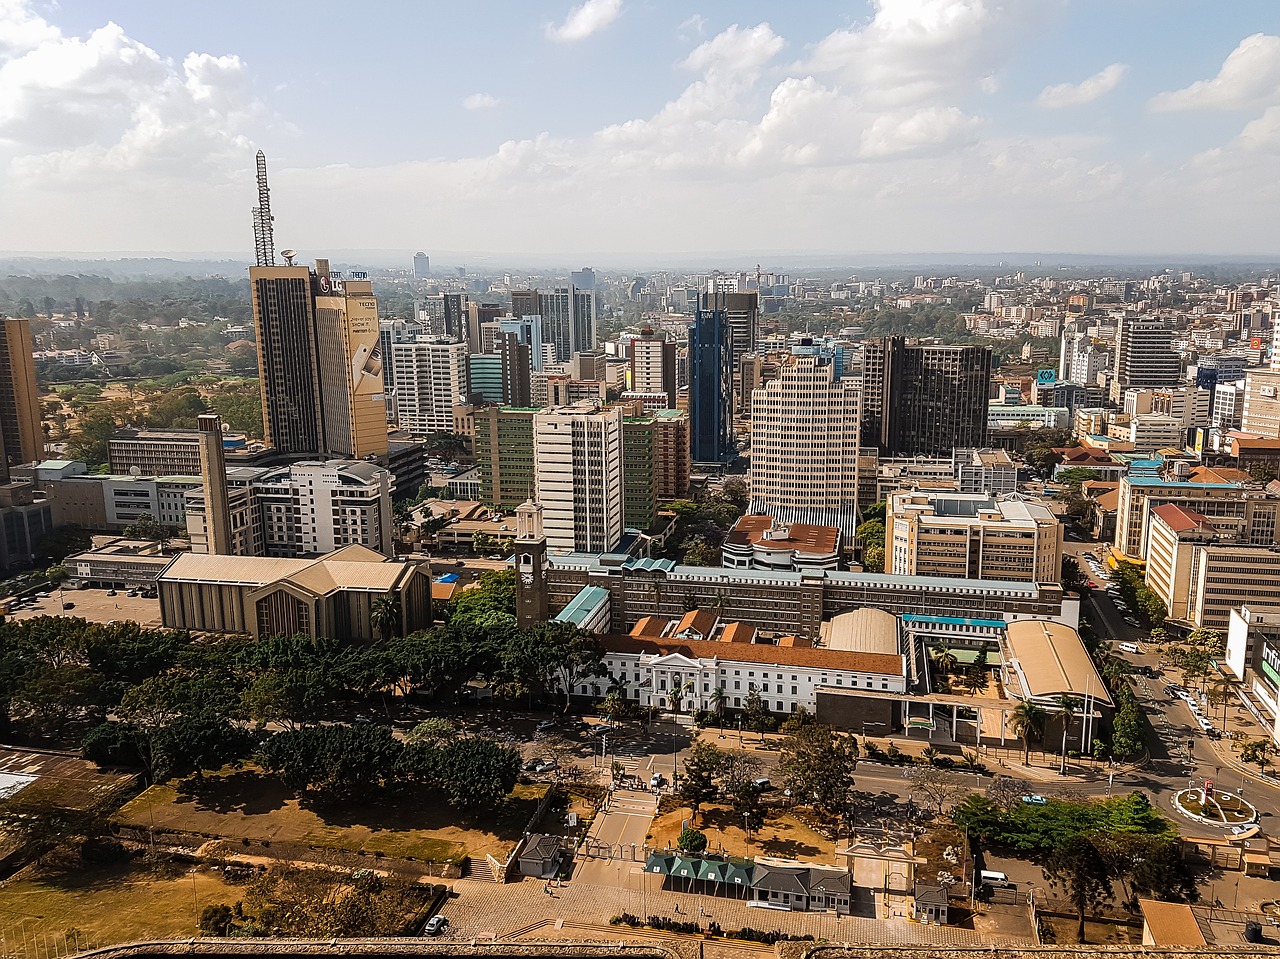 City of Nairobi